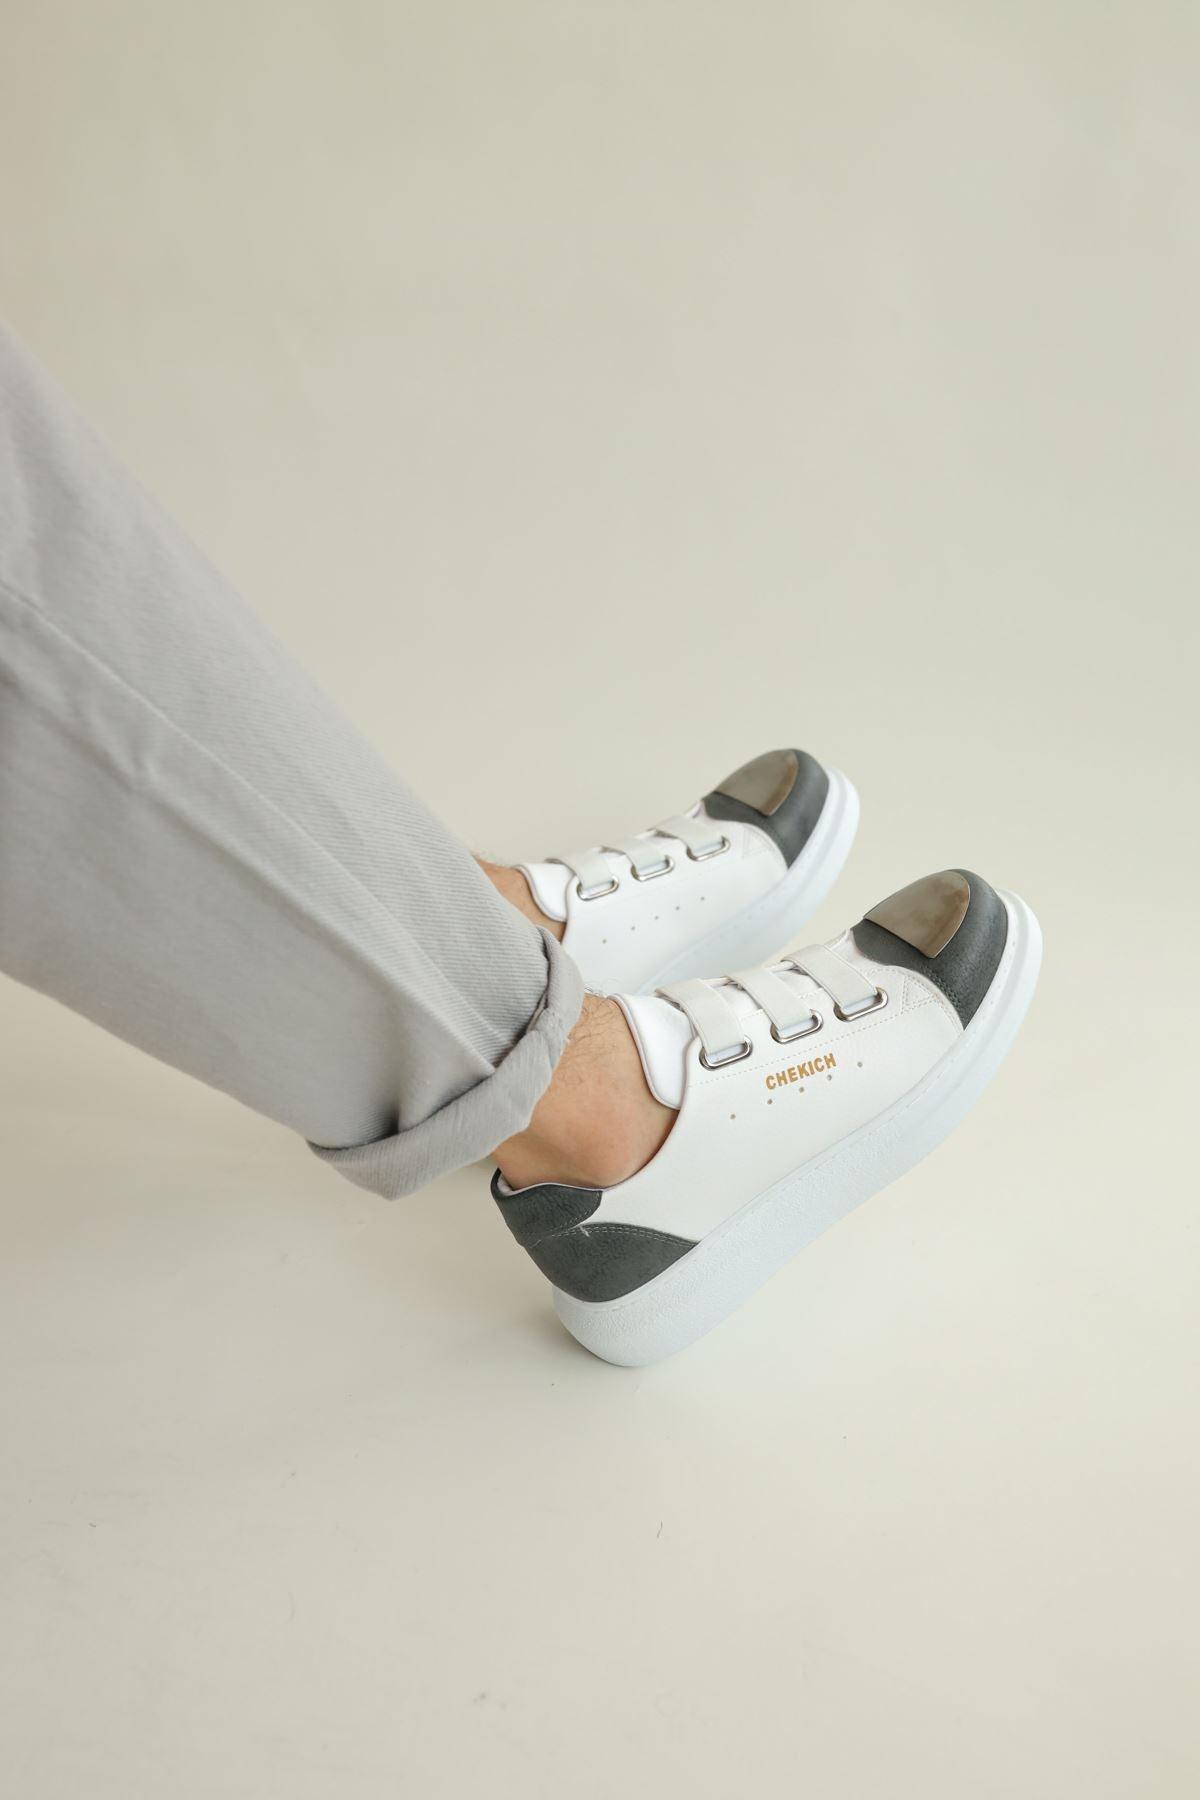 CH251 Garni BT Men's Shoes WHITE/ANTHRACITE - STREET MODE ™